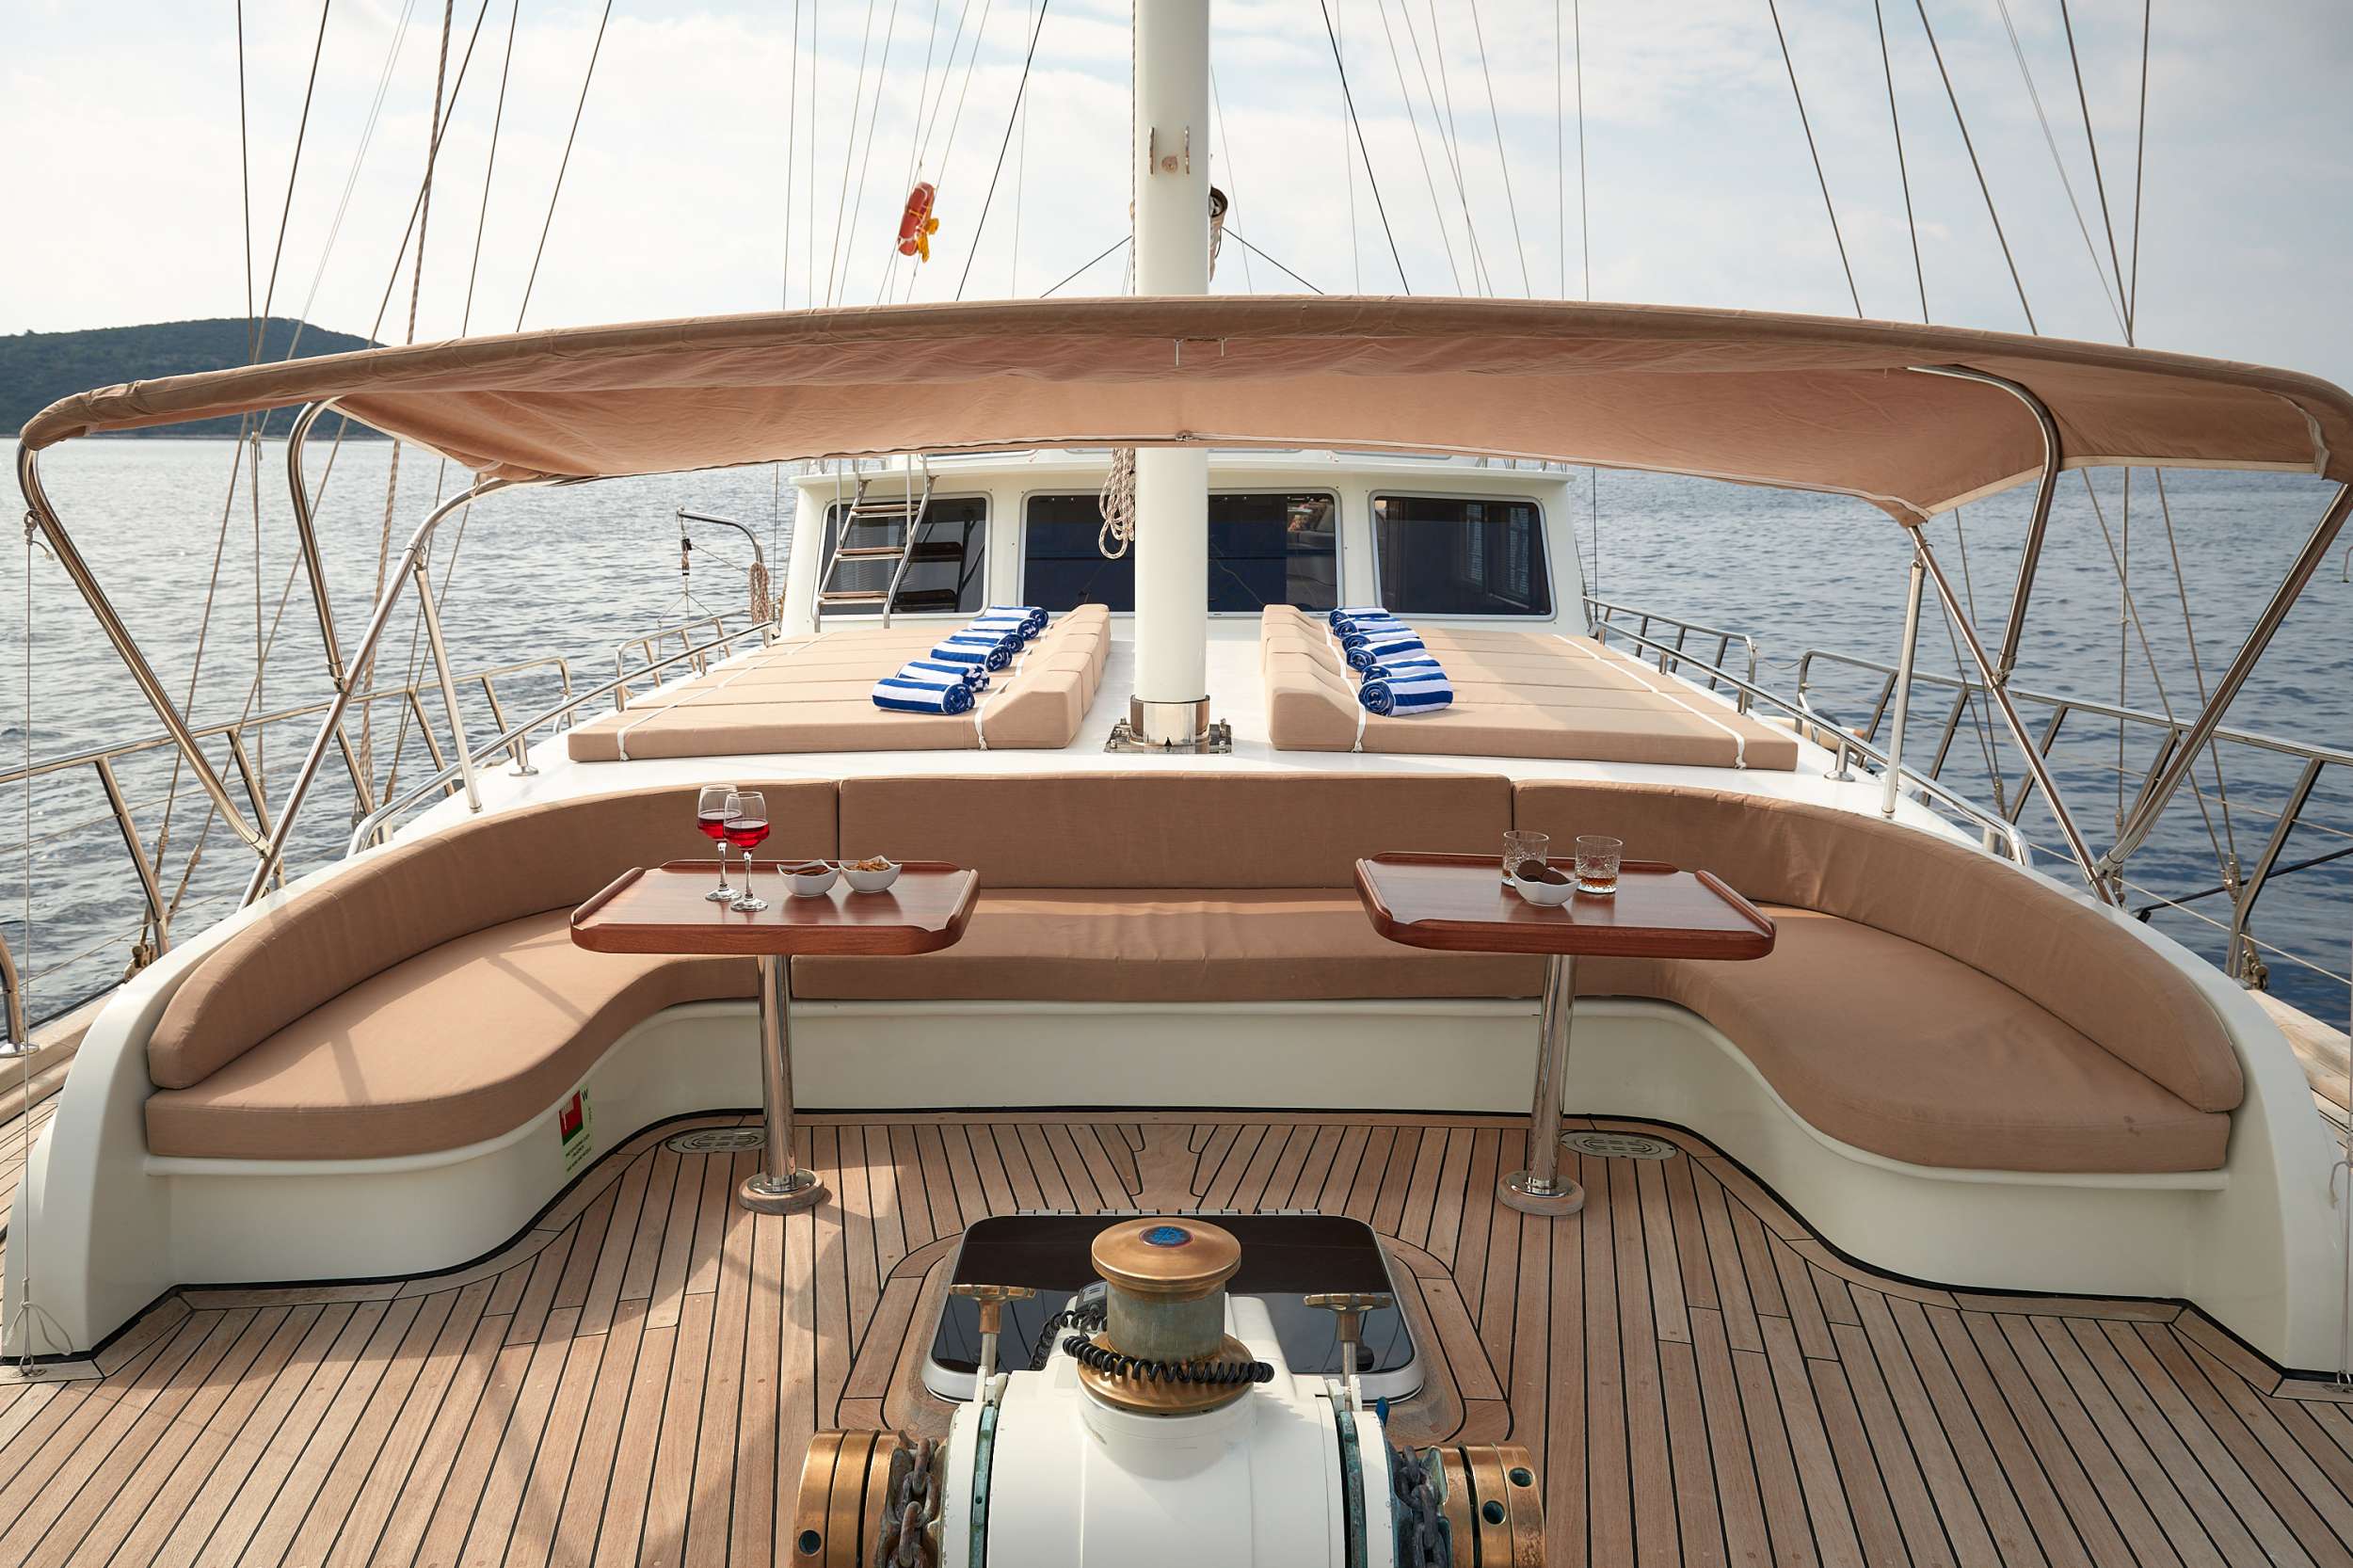 SEA BREEZE - Yacht Charter Ploče & Boat hire in Croatia 5